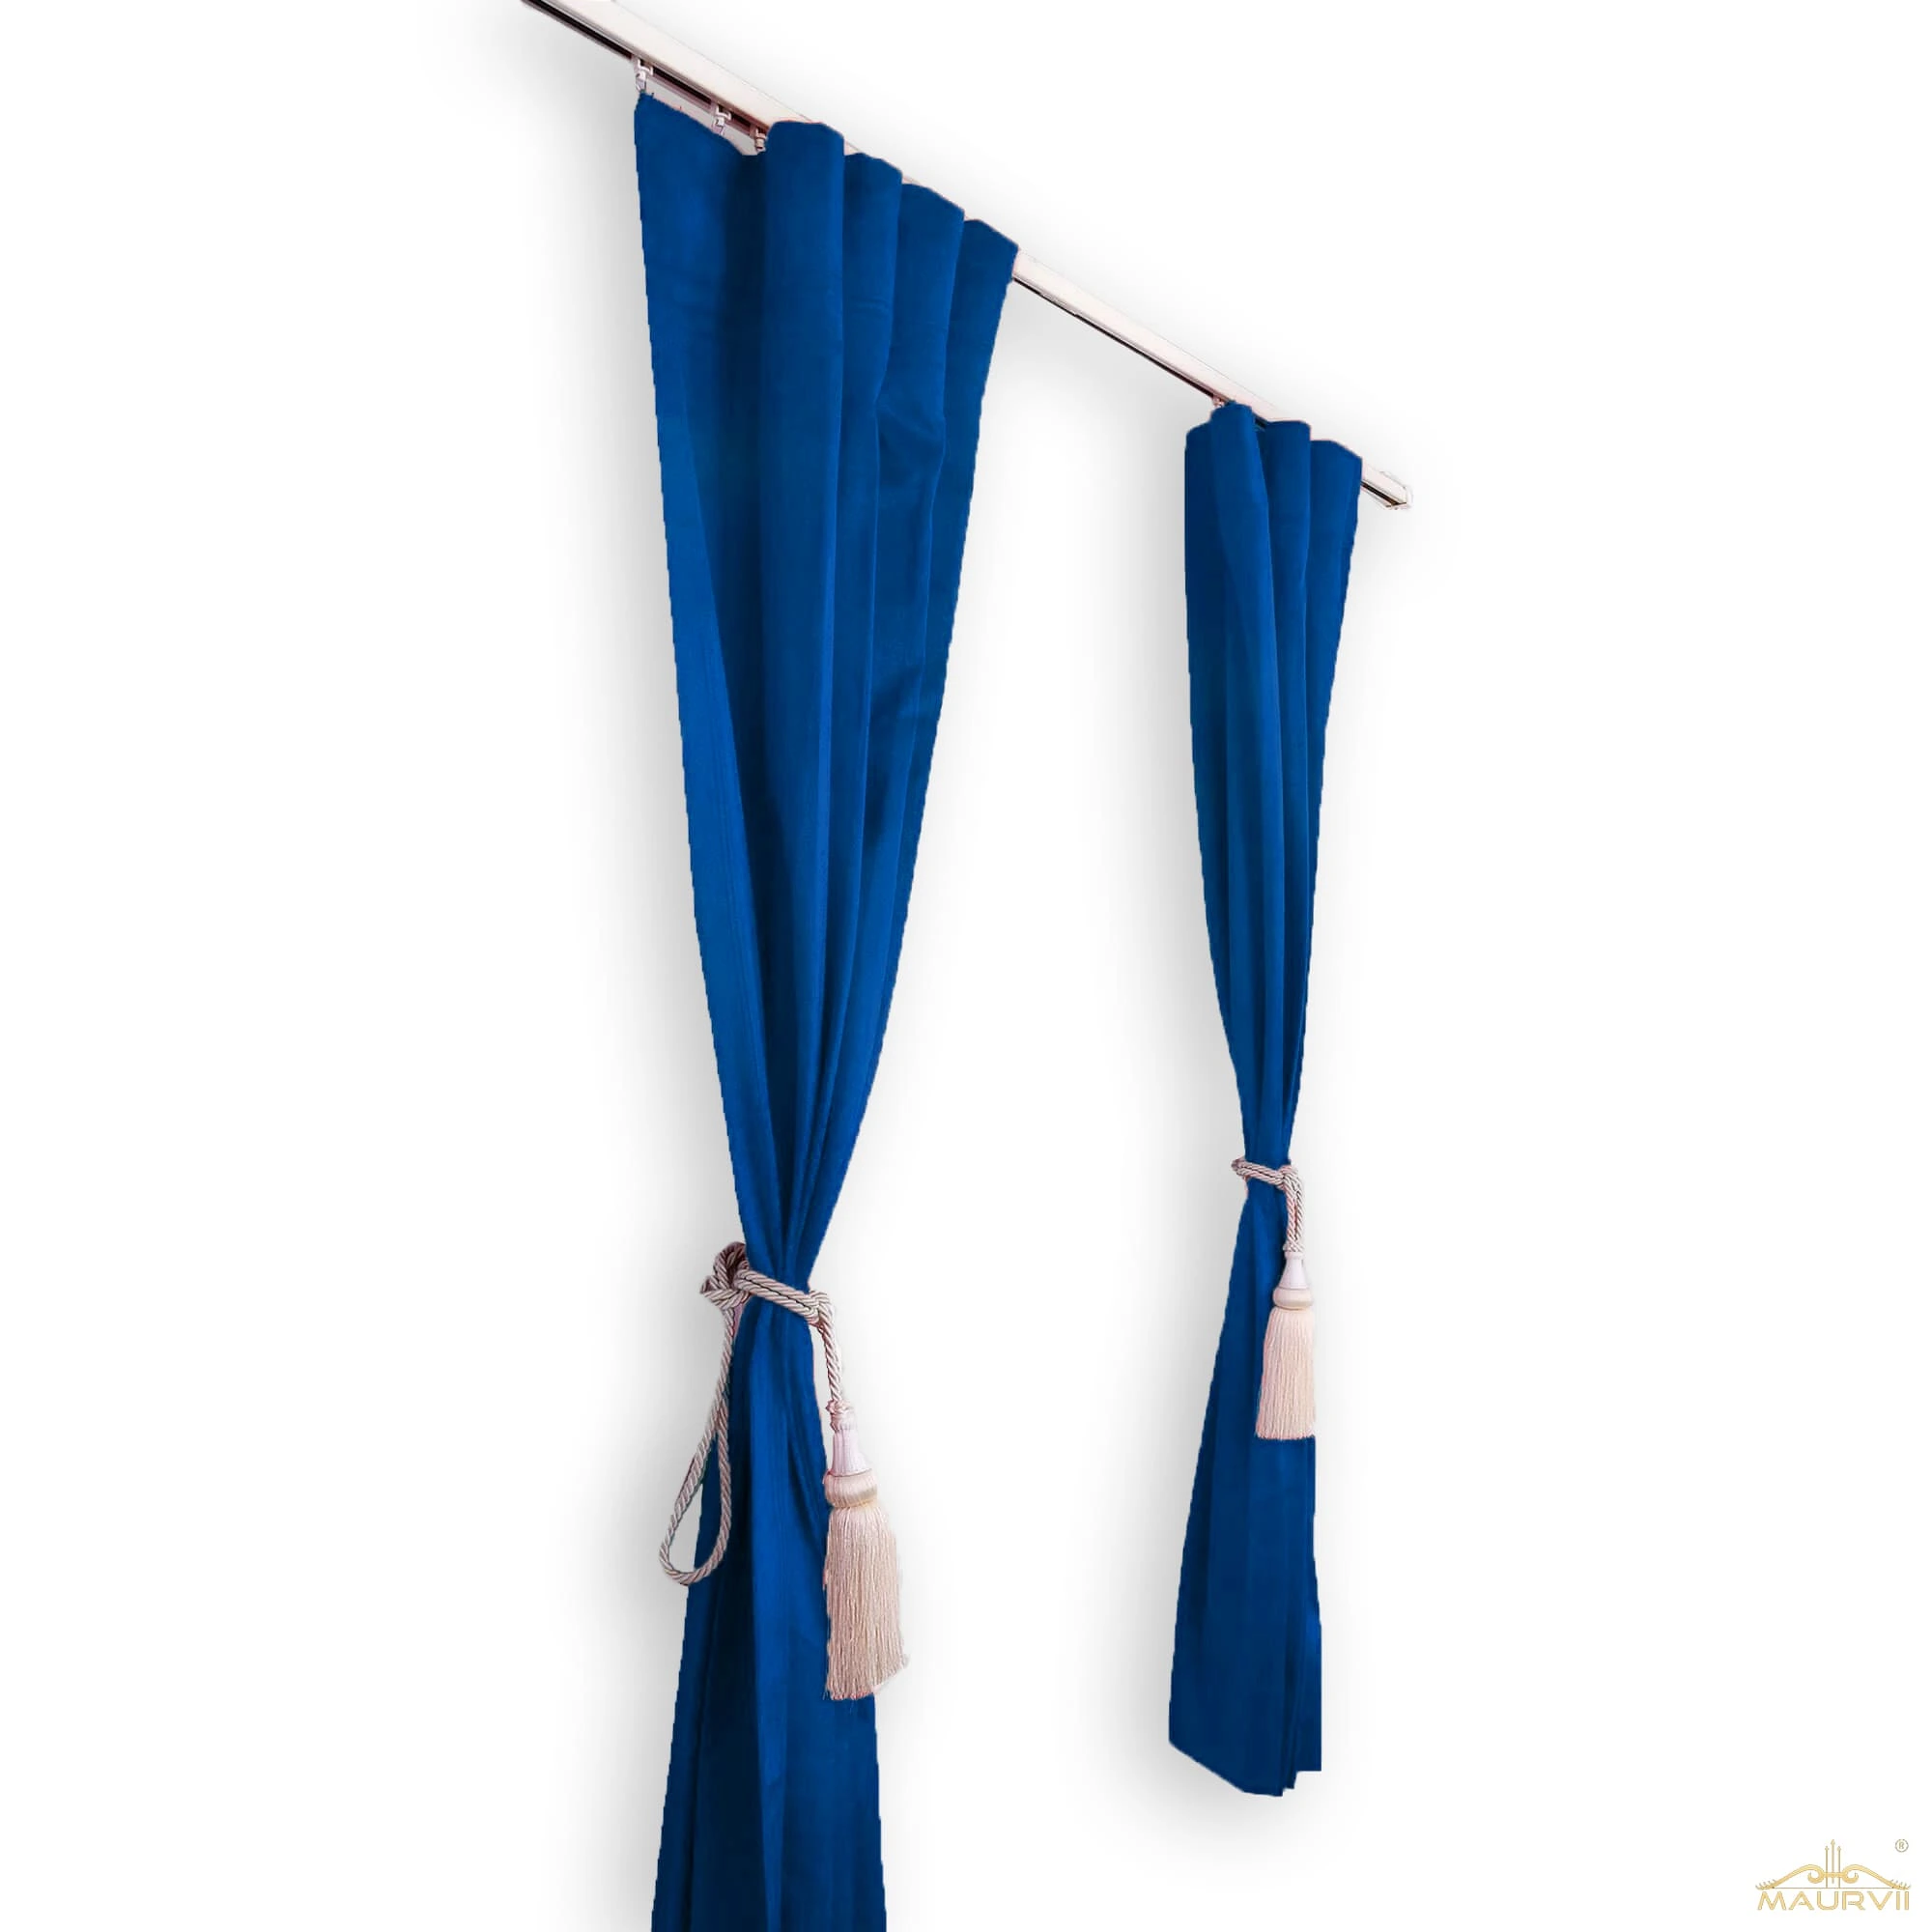 Blue velvet curtains